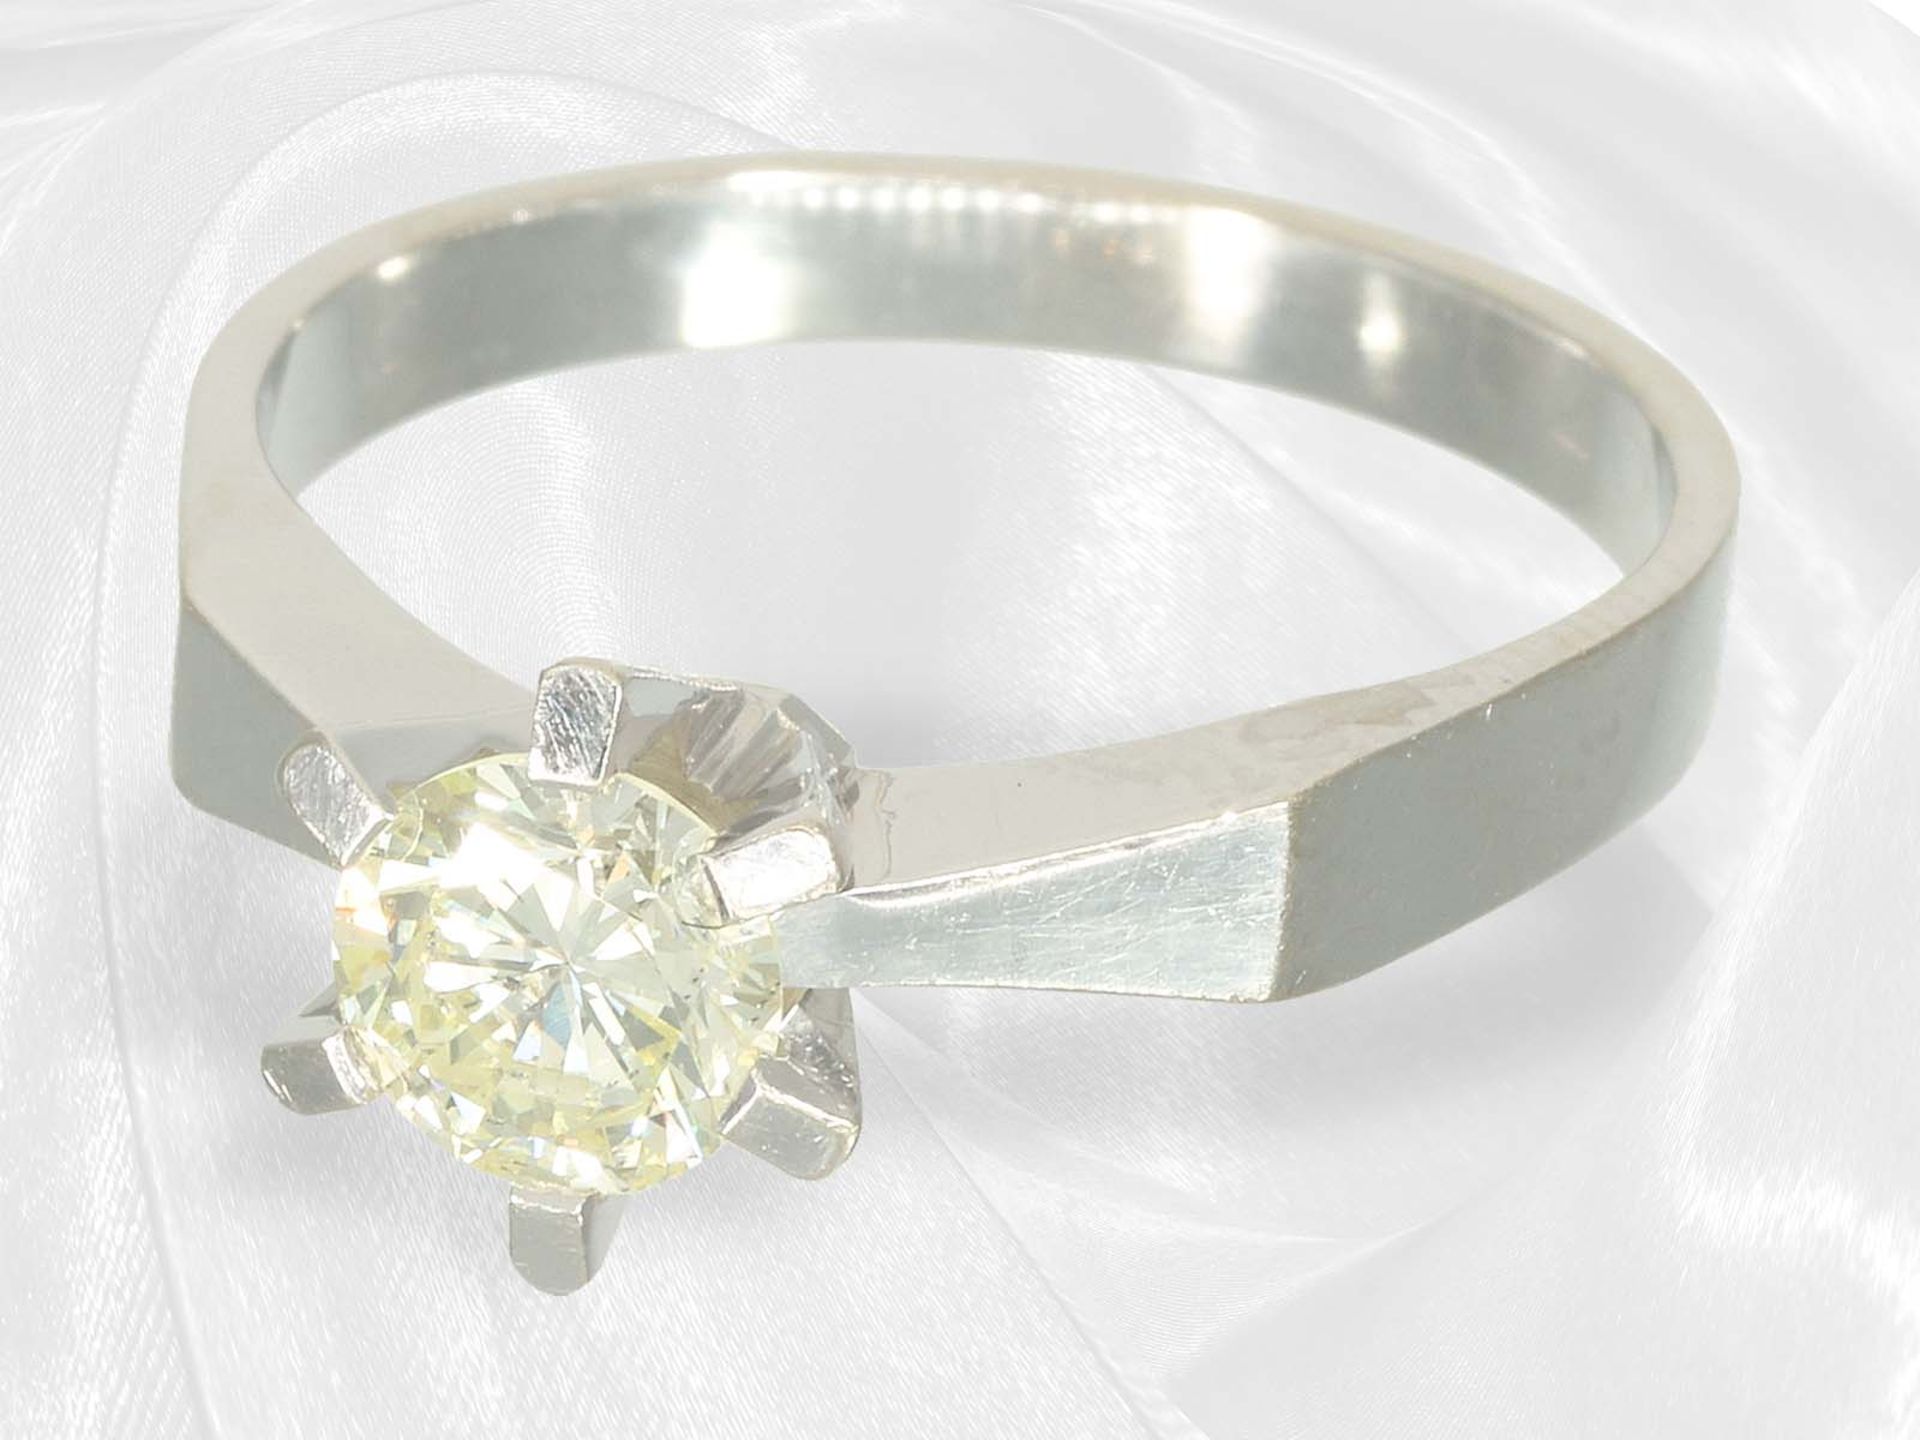 Vintage solitaire brilliant-cut diamond goldsmith ring, approx. 0.7ct brilliant-cut diamond